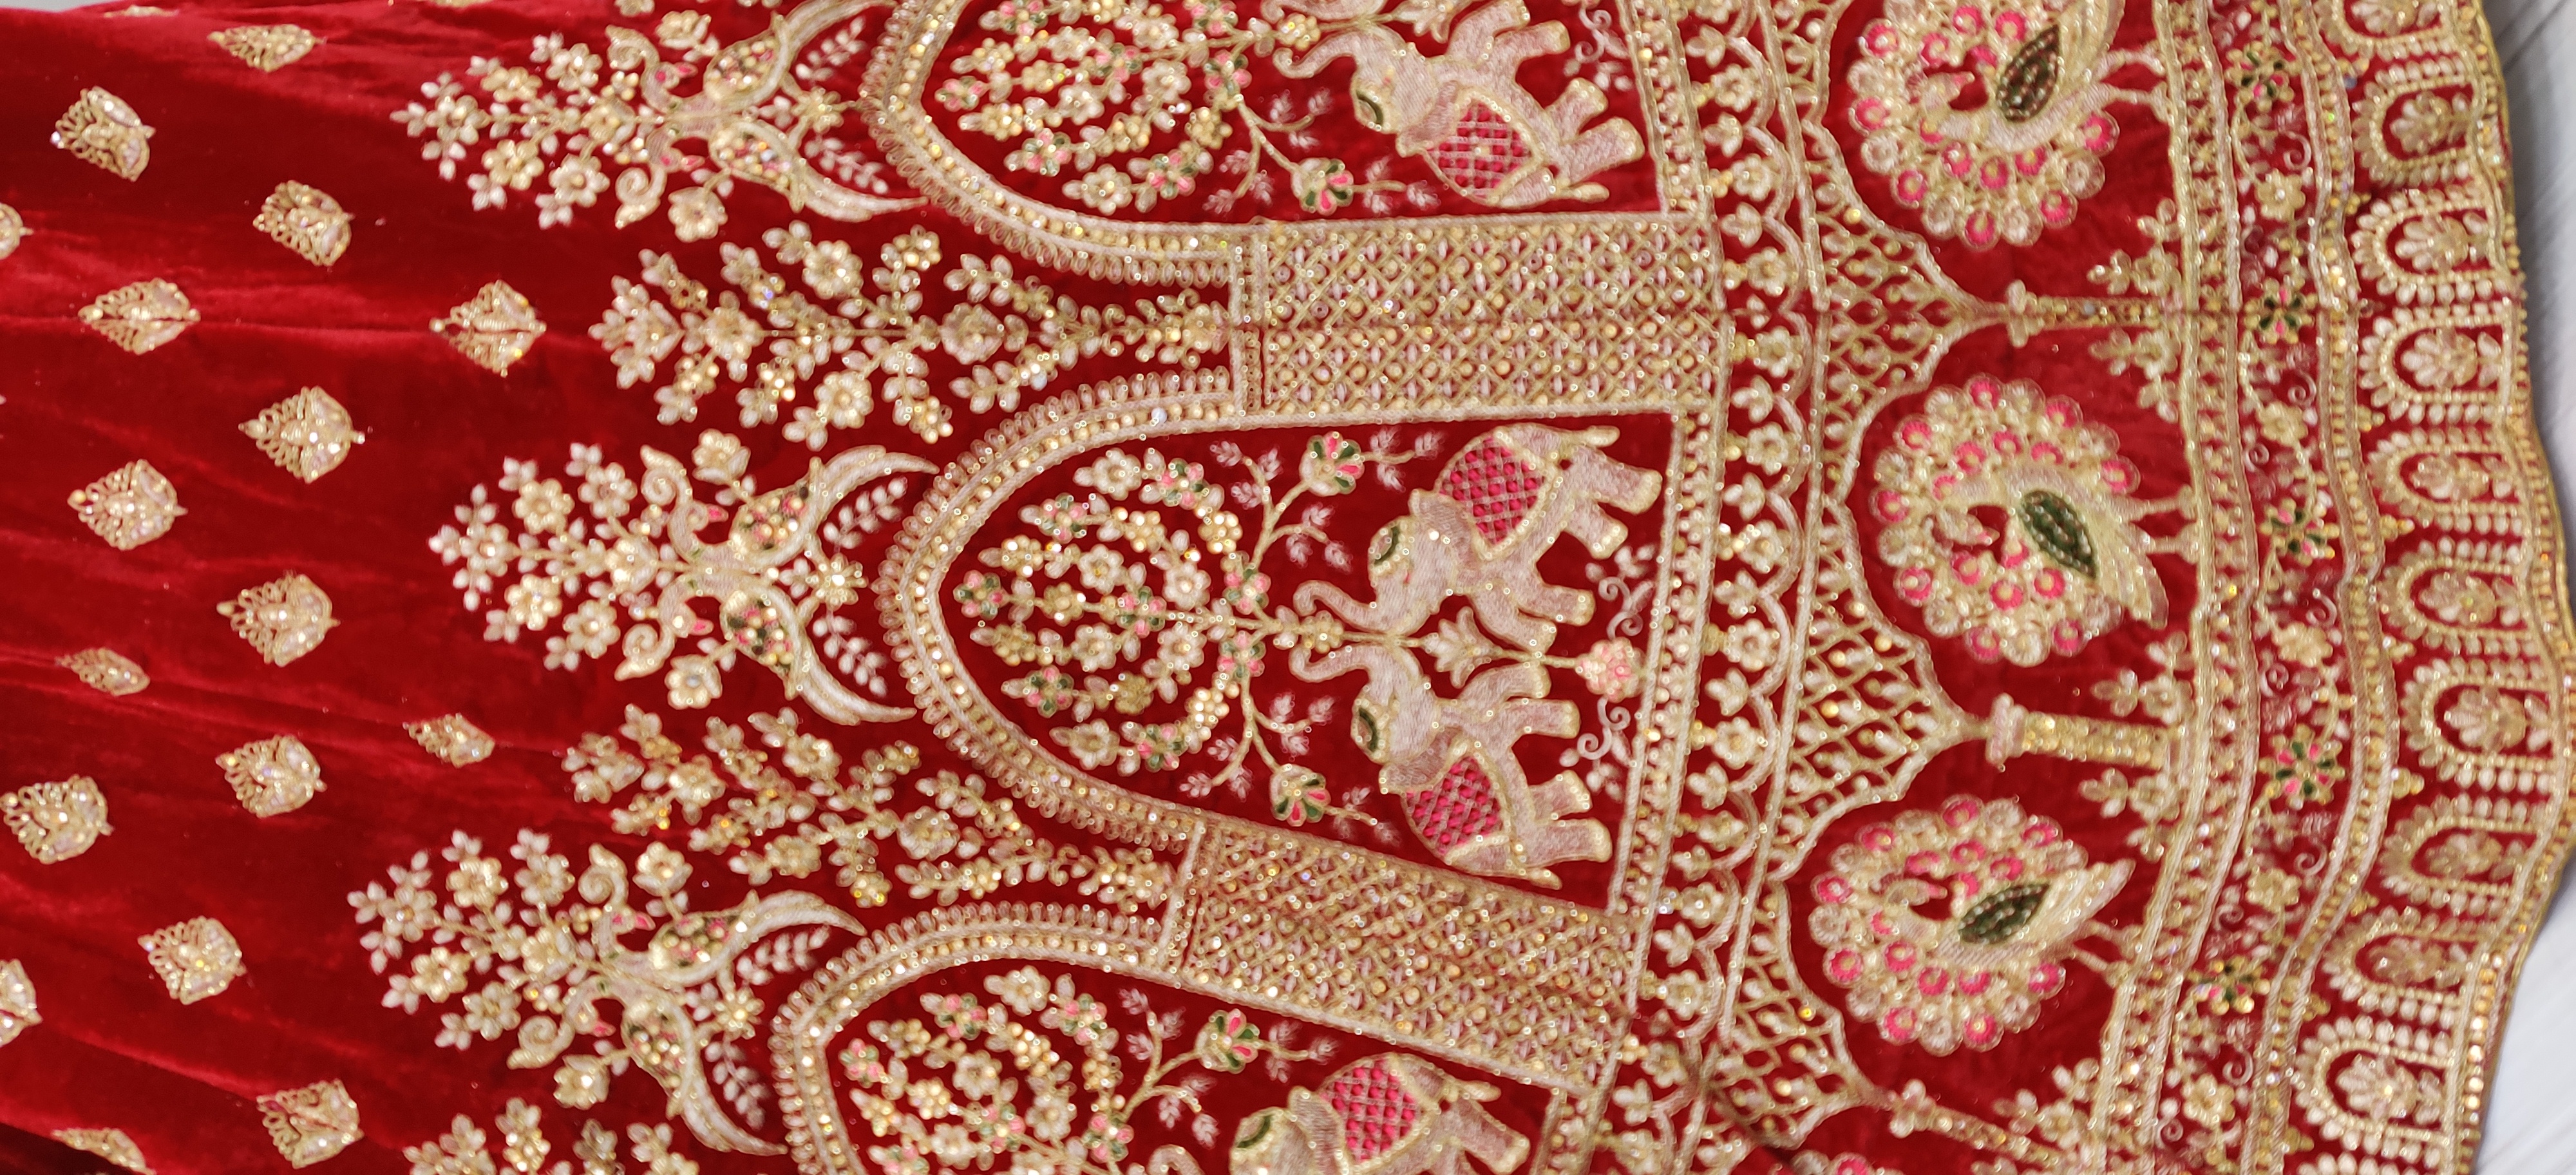 Velvet Embroidery Lehenga Choli In Red Colour